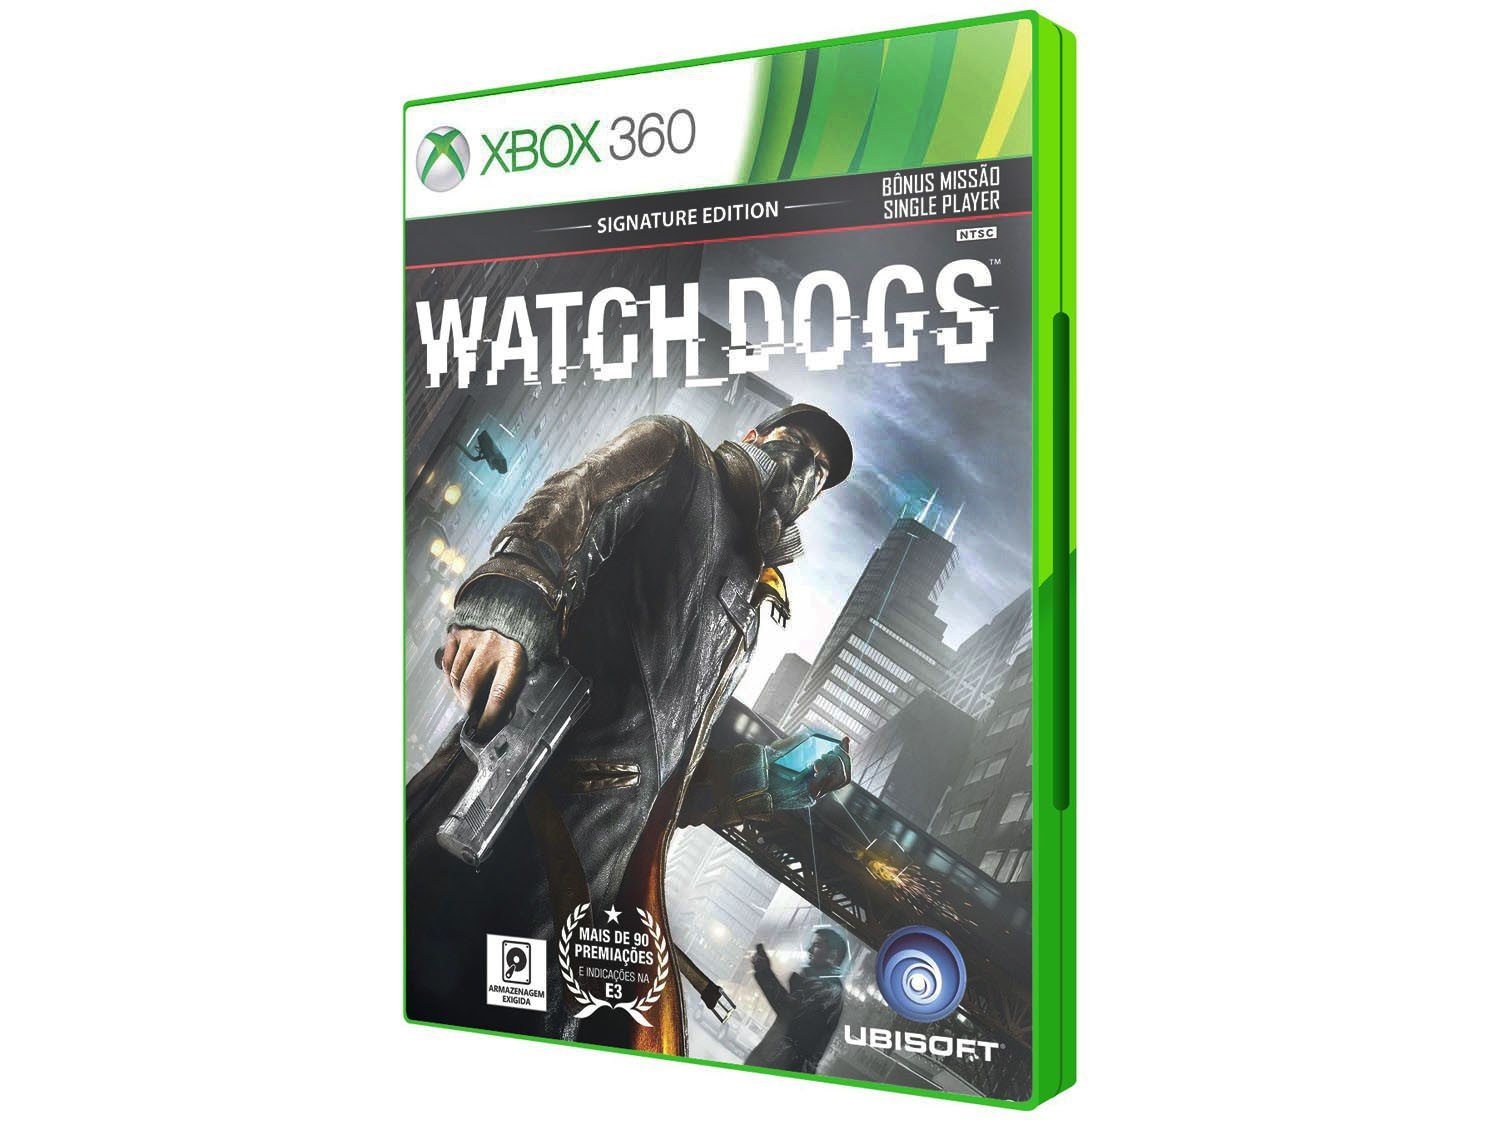 360 игру магазине. Вотч догс на Xbox 360. Watch Dogs хбокс 360. Вотч догс 2 на Xbox 360. Watch Dogs Xbox 360 диск.